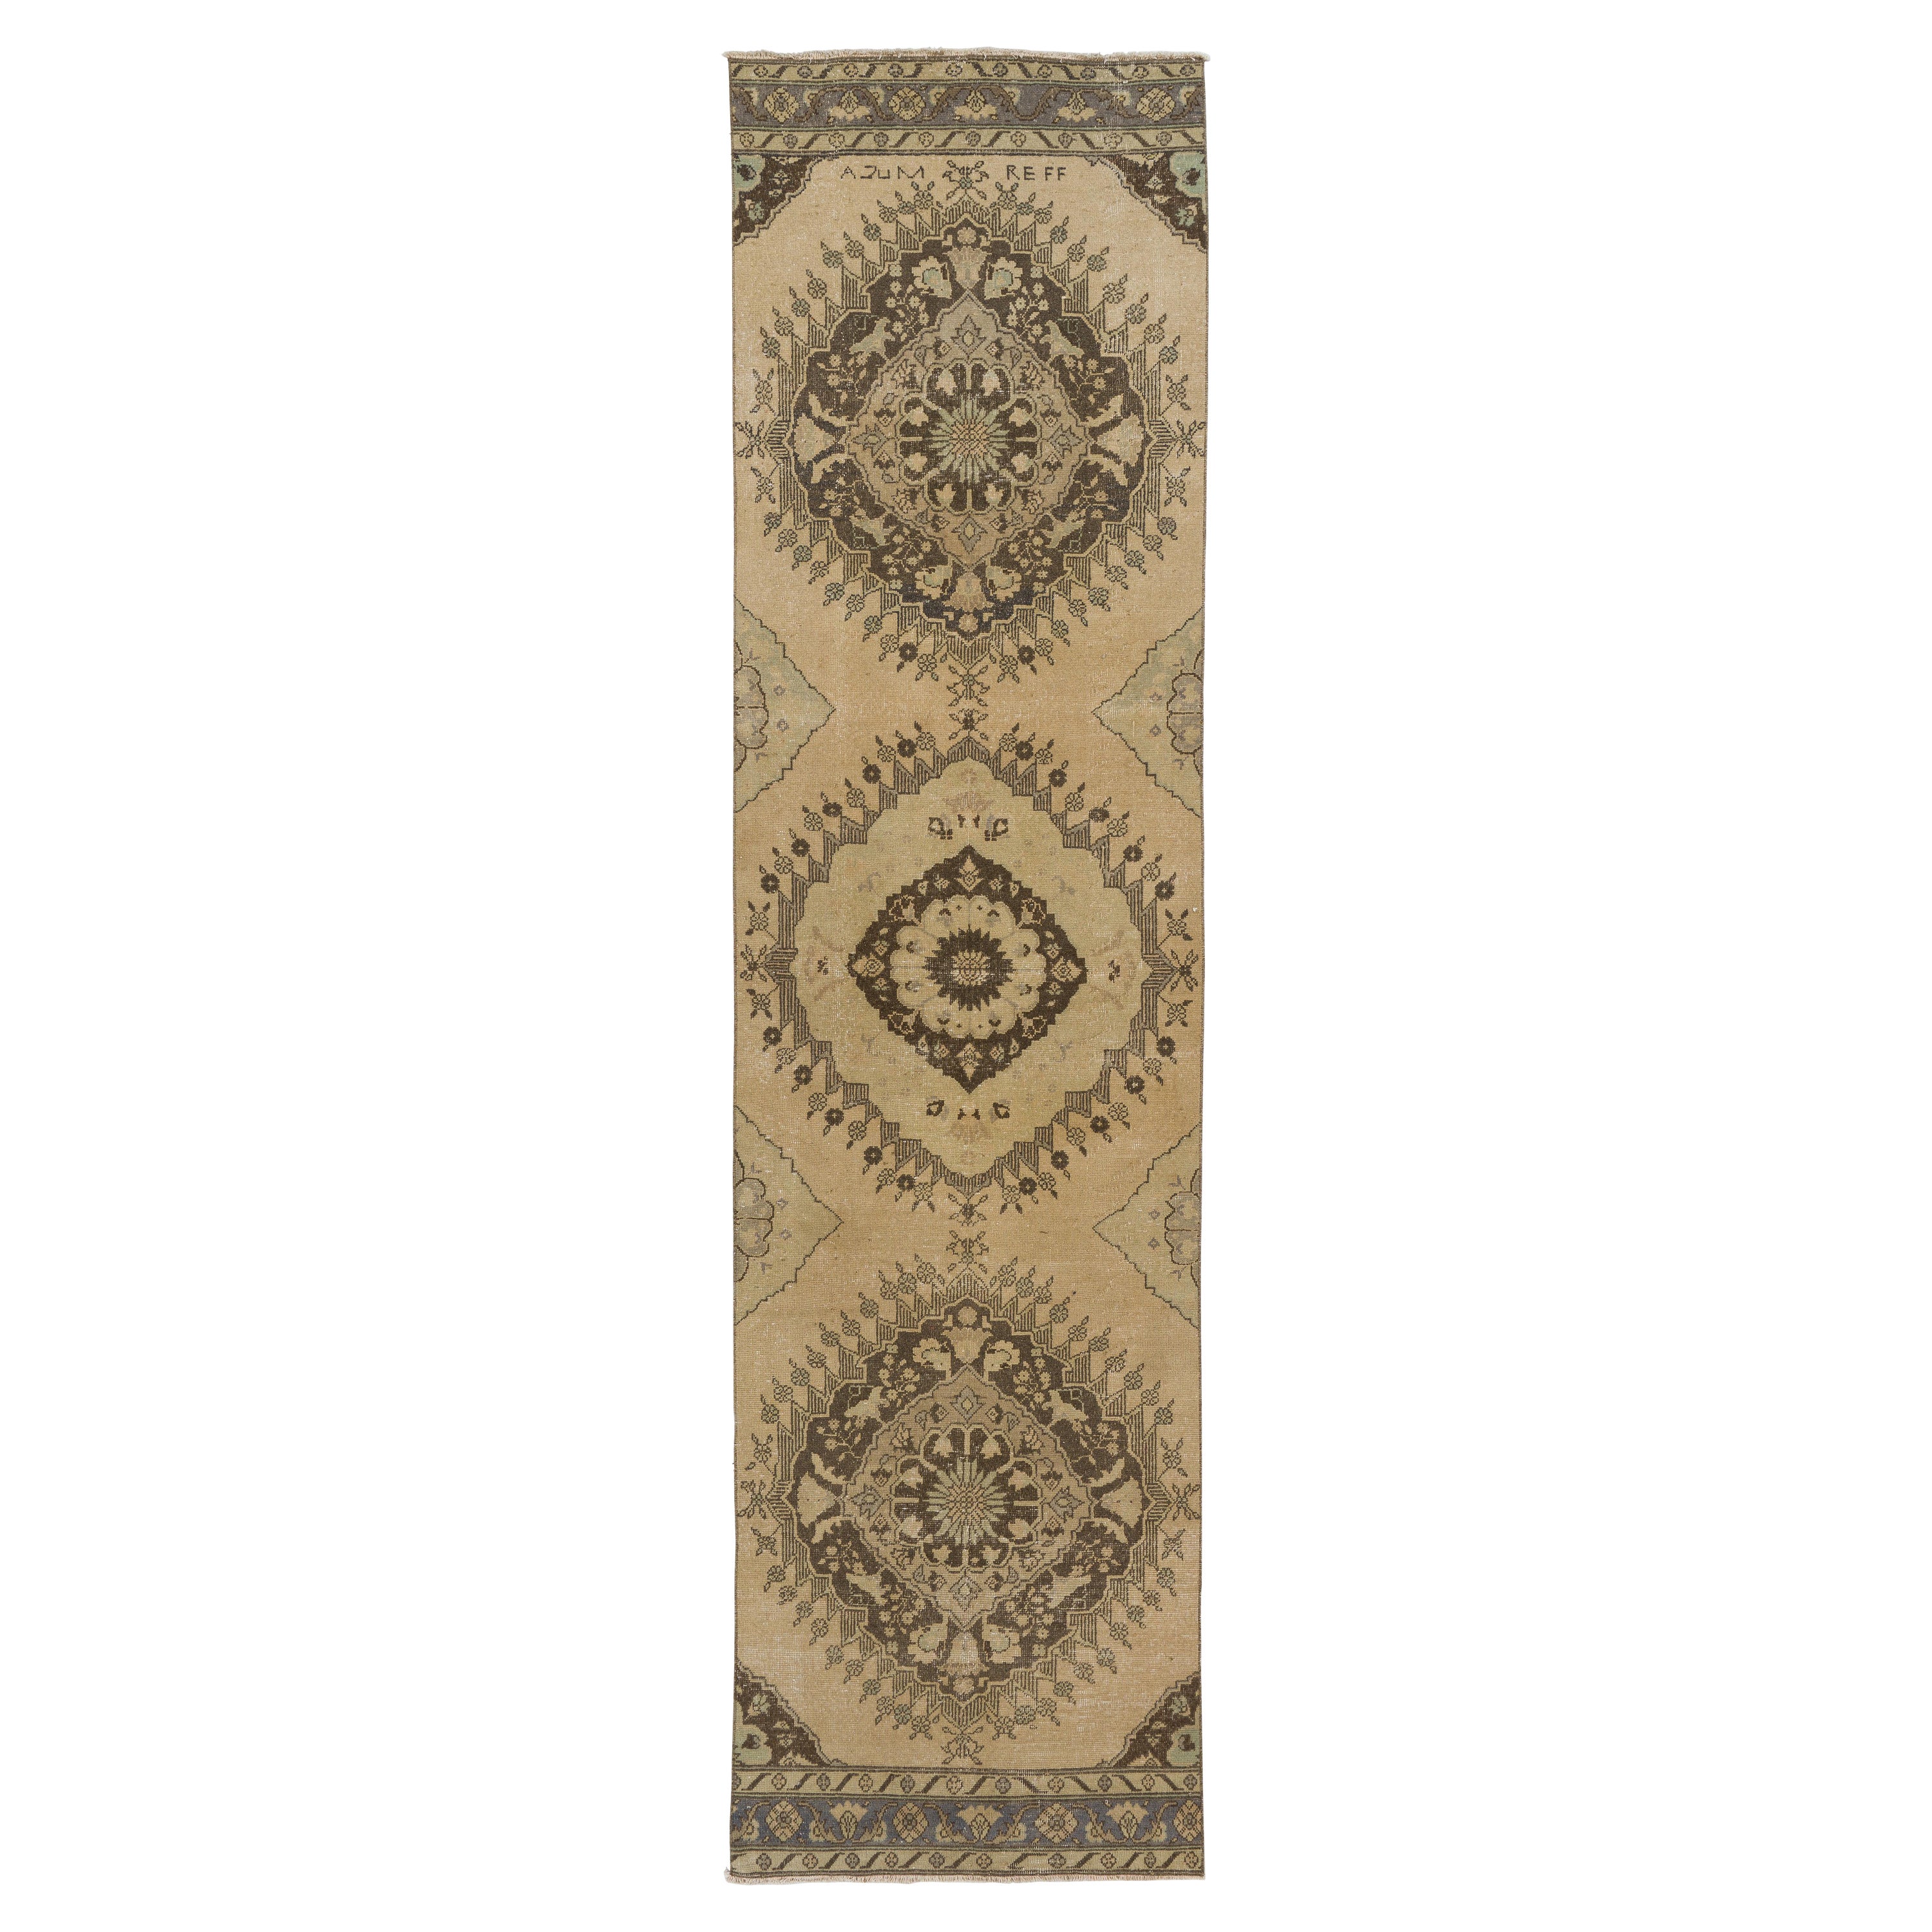 3.3x12.7 Ft Vintage Runner Rug in Beige. Handmade Anatolian Carpet for Hallway For Sale